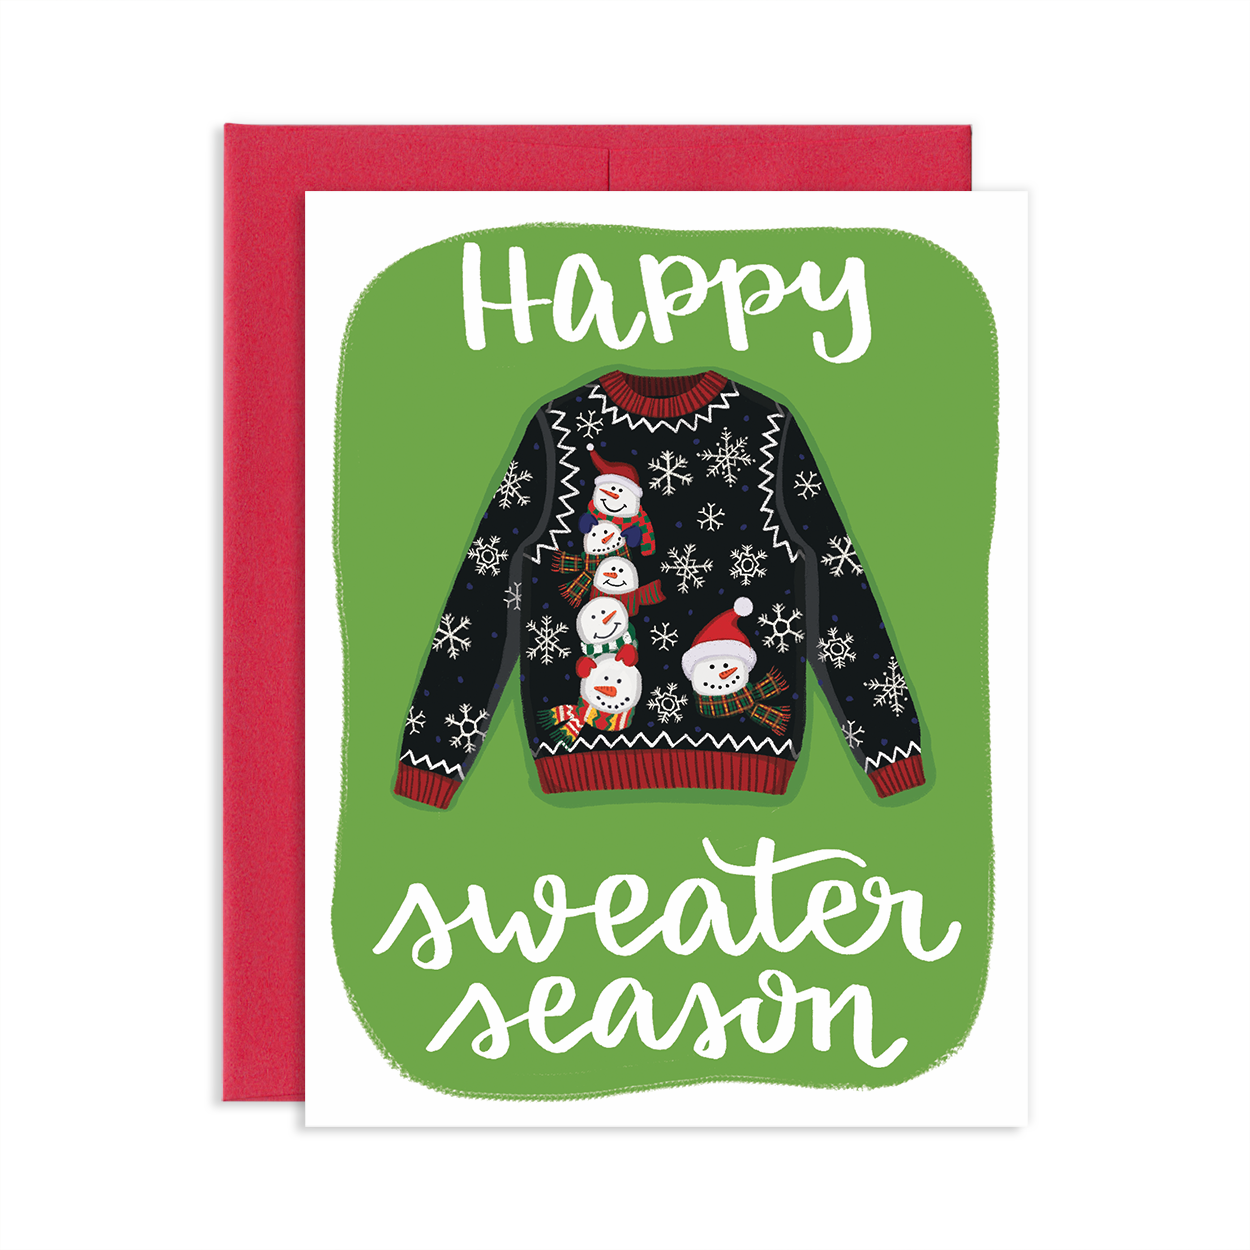 Sweater Season Greeting Card